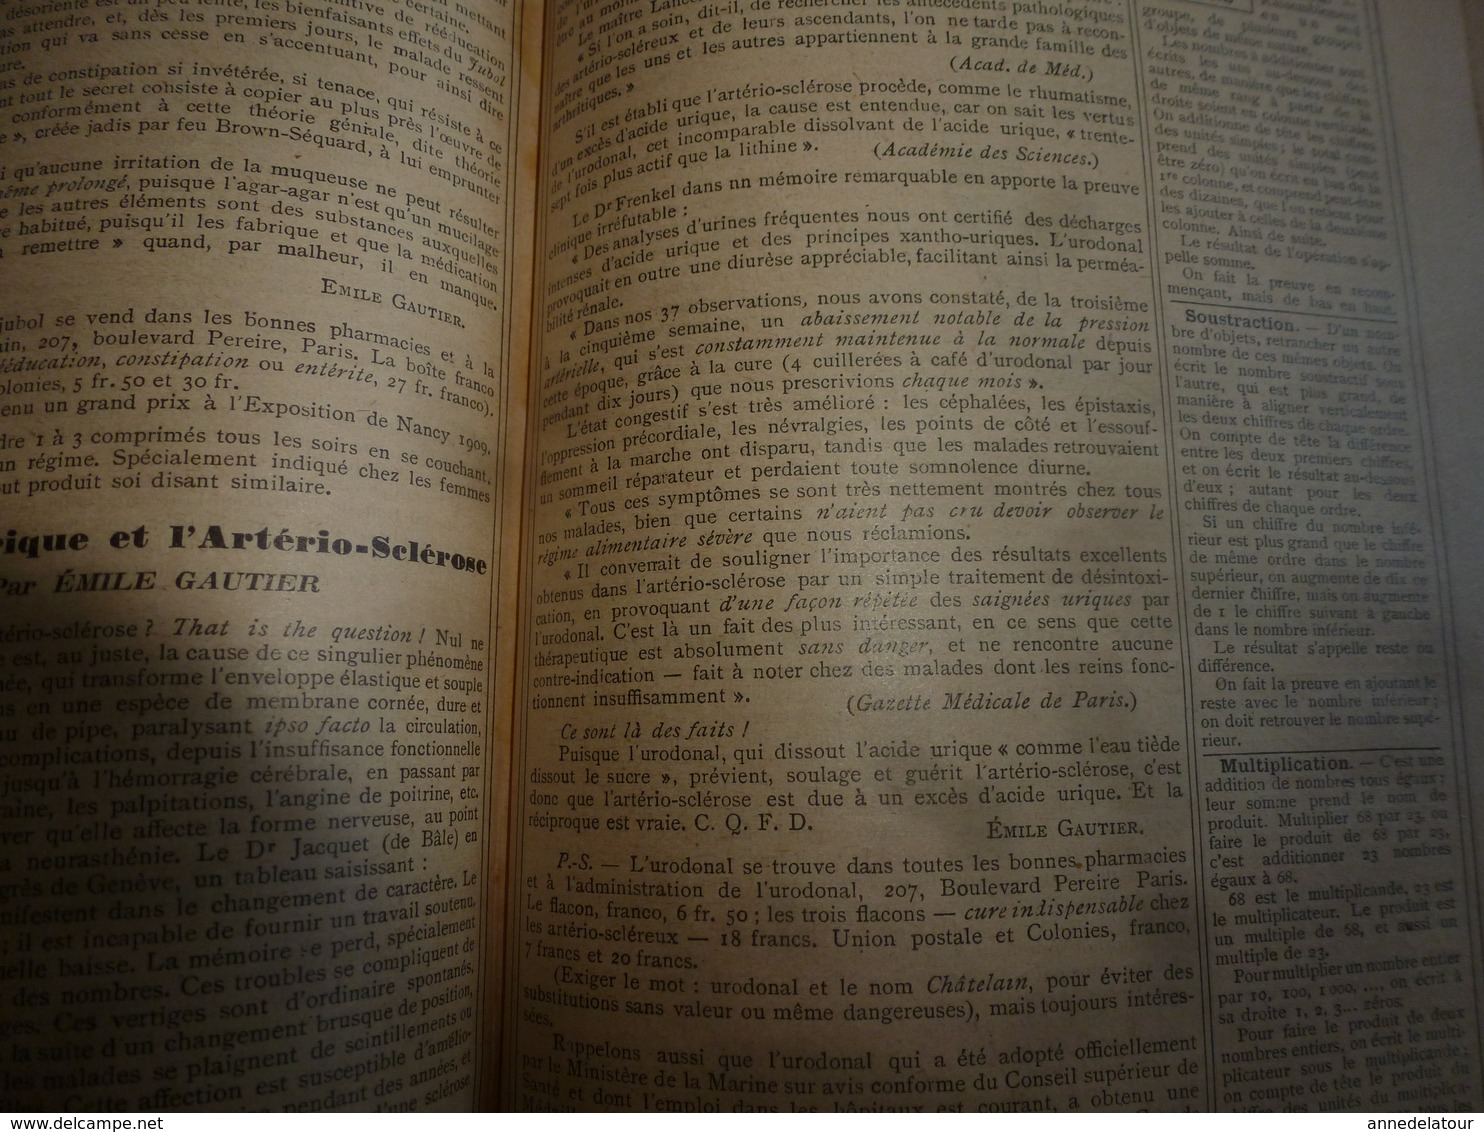 1911 Tremblement de terre à ROGNES;Avions;etc(éd. luxe) ALMANACH HACHETTE (Encyclopédie Populaire de la Vie Pratique);